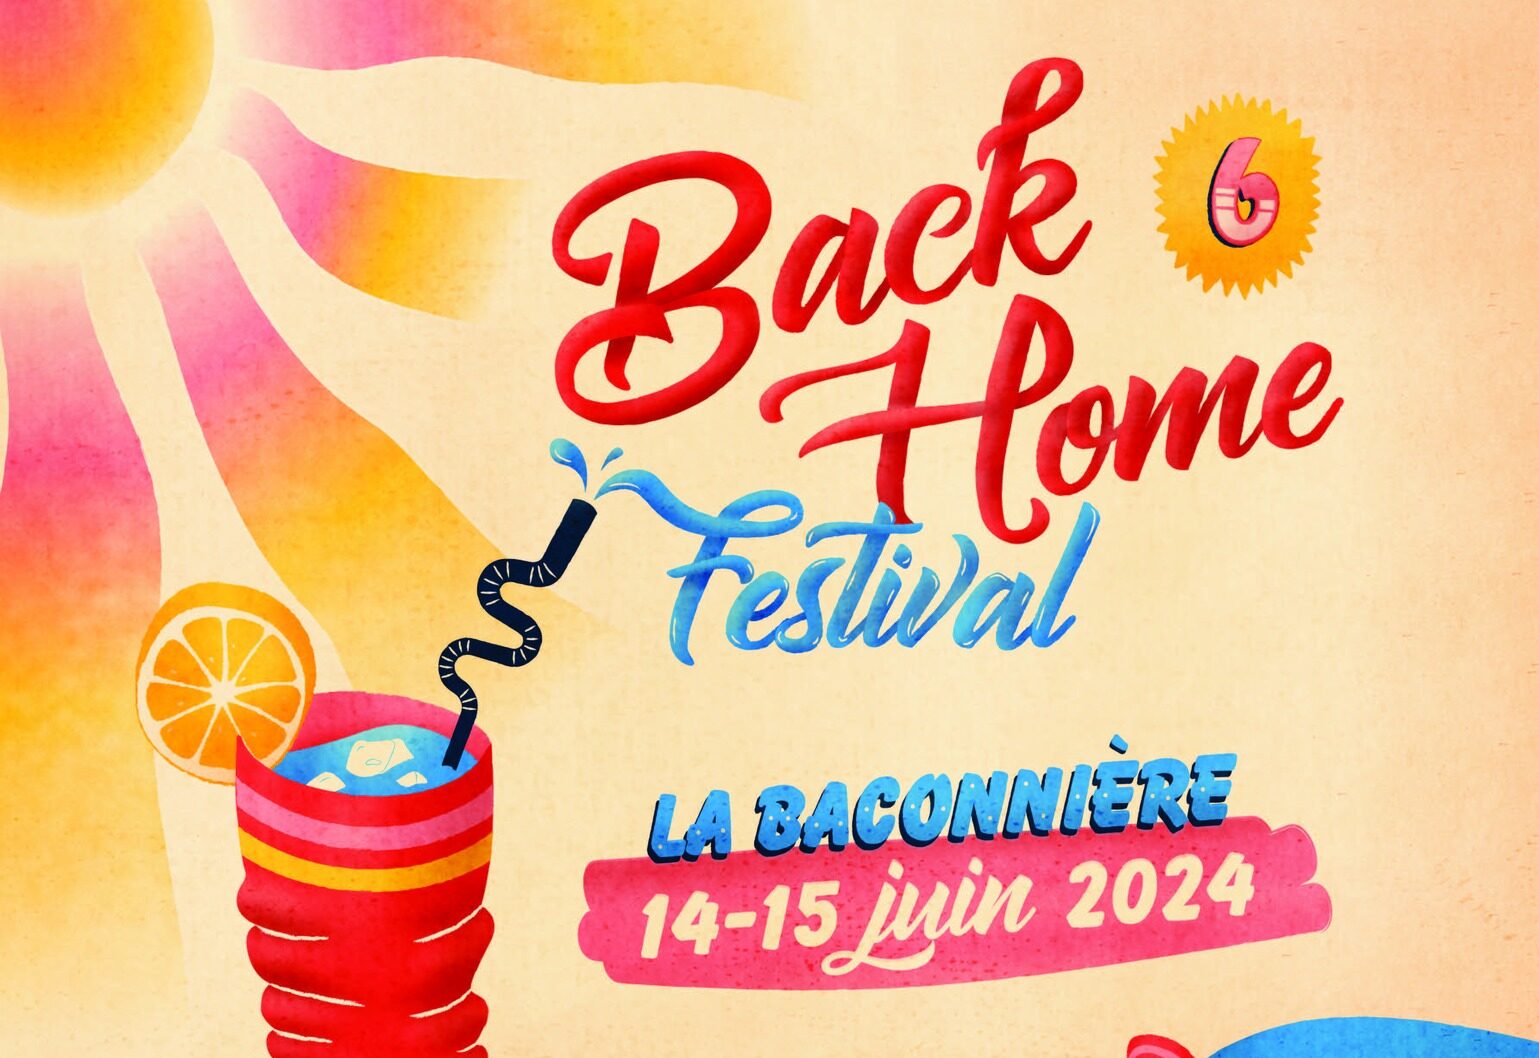 Back Home Festival #6